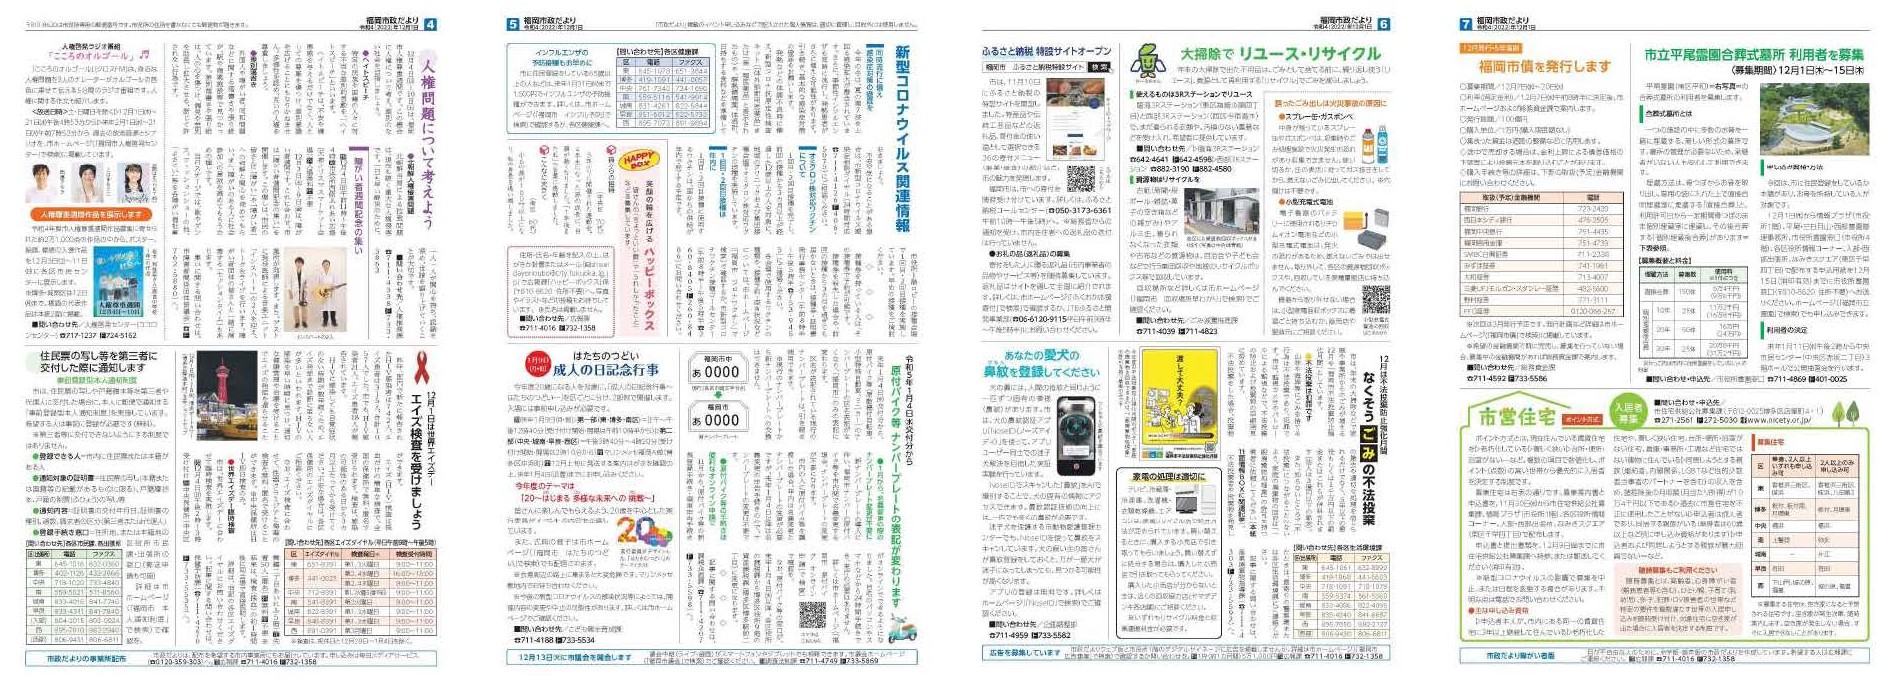 福岡市政だより2022年12月1日号の4面から7面の紙面画像